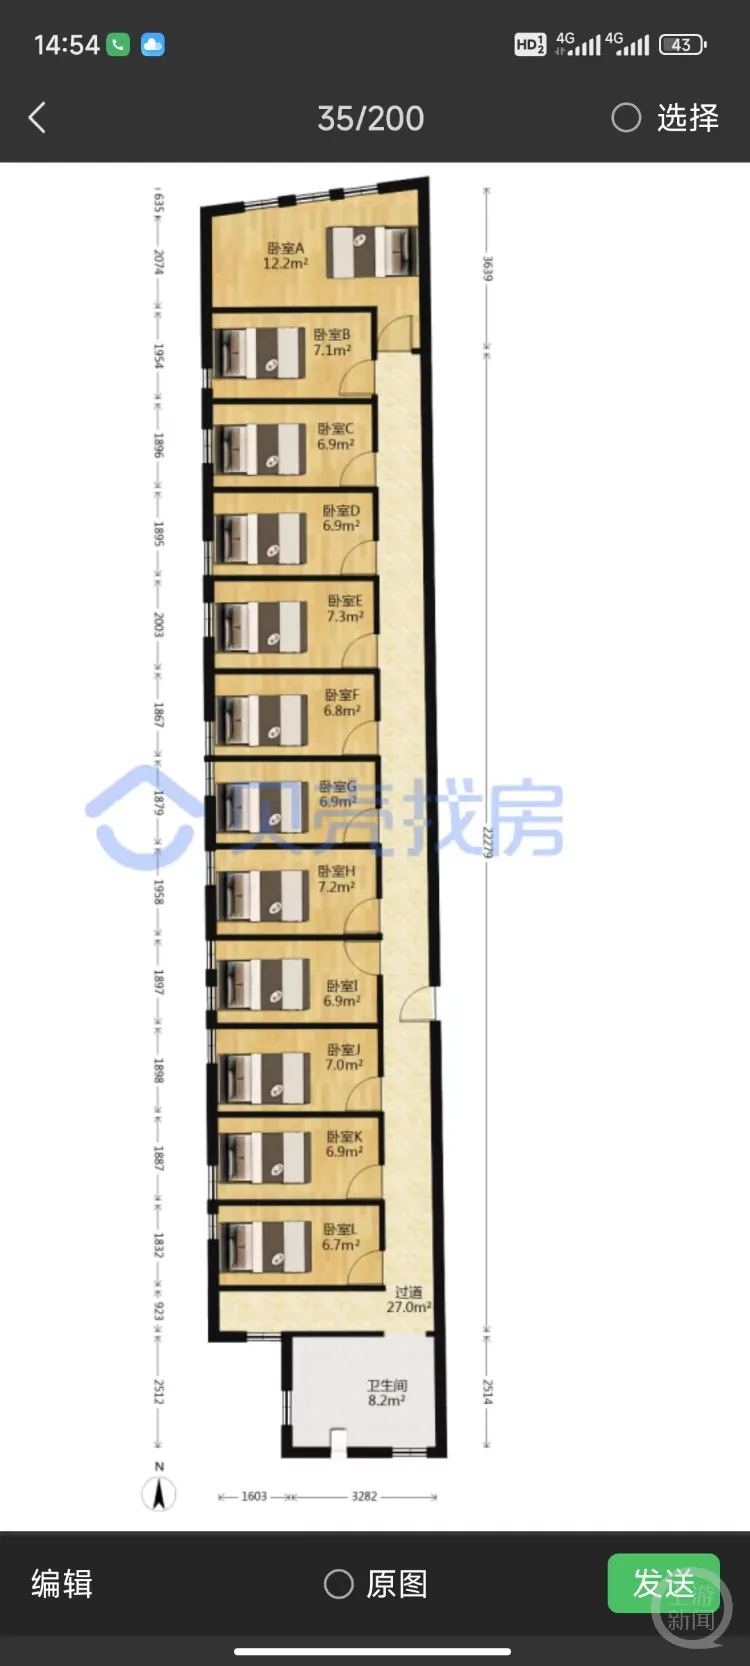 广州一套150平“砍刀房”隔出12间12床售价350万